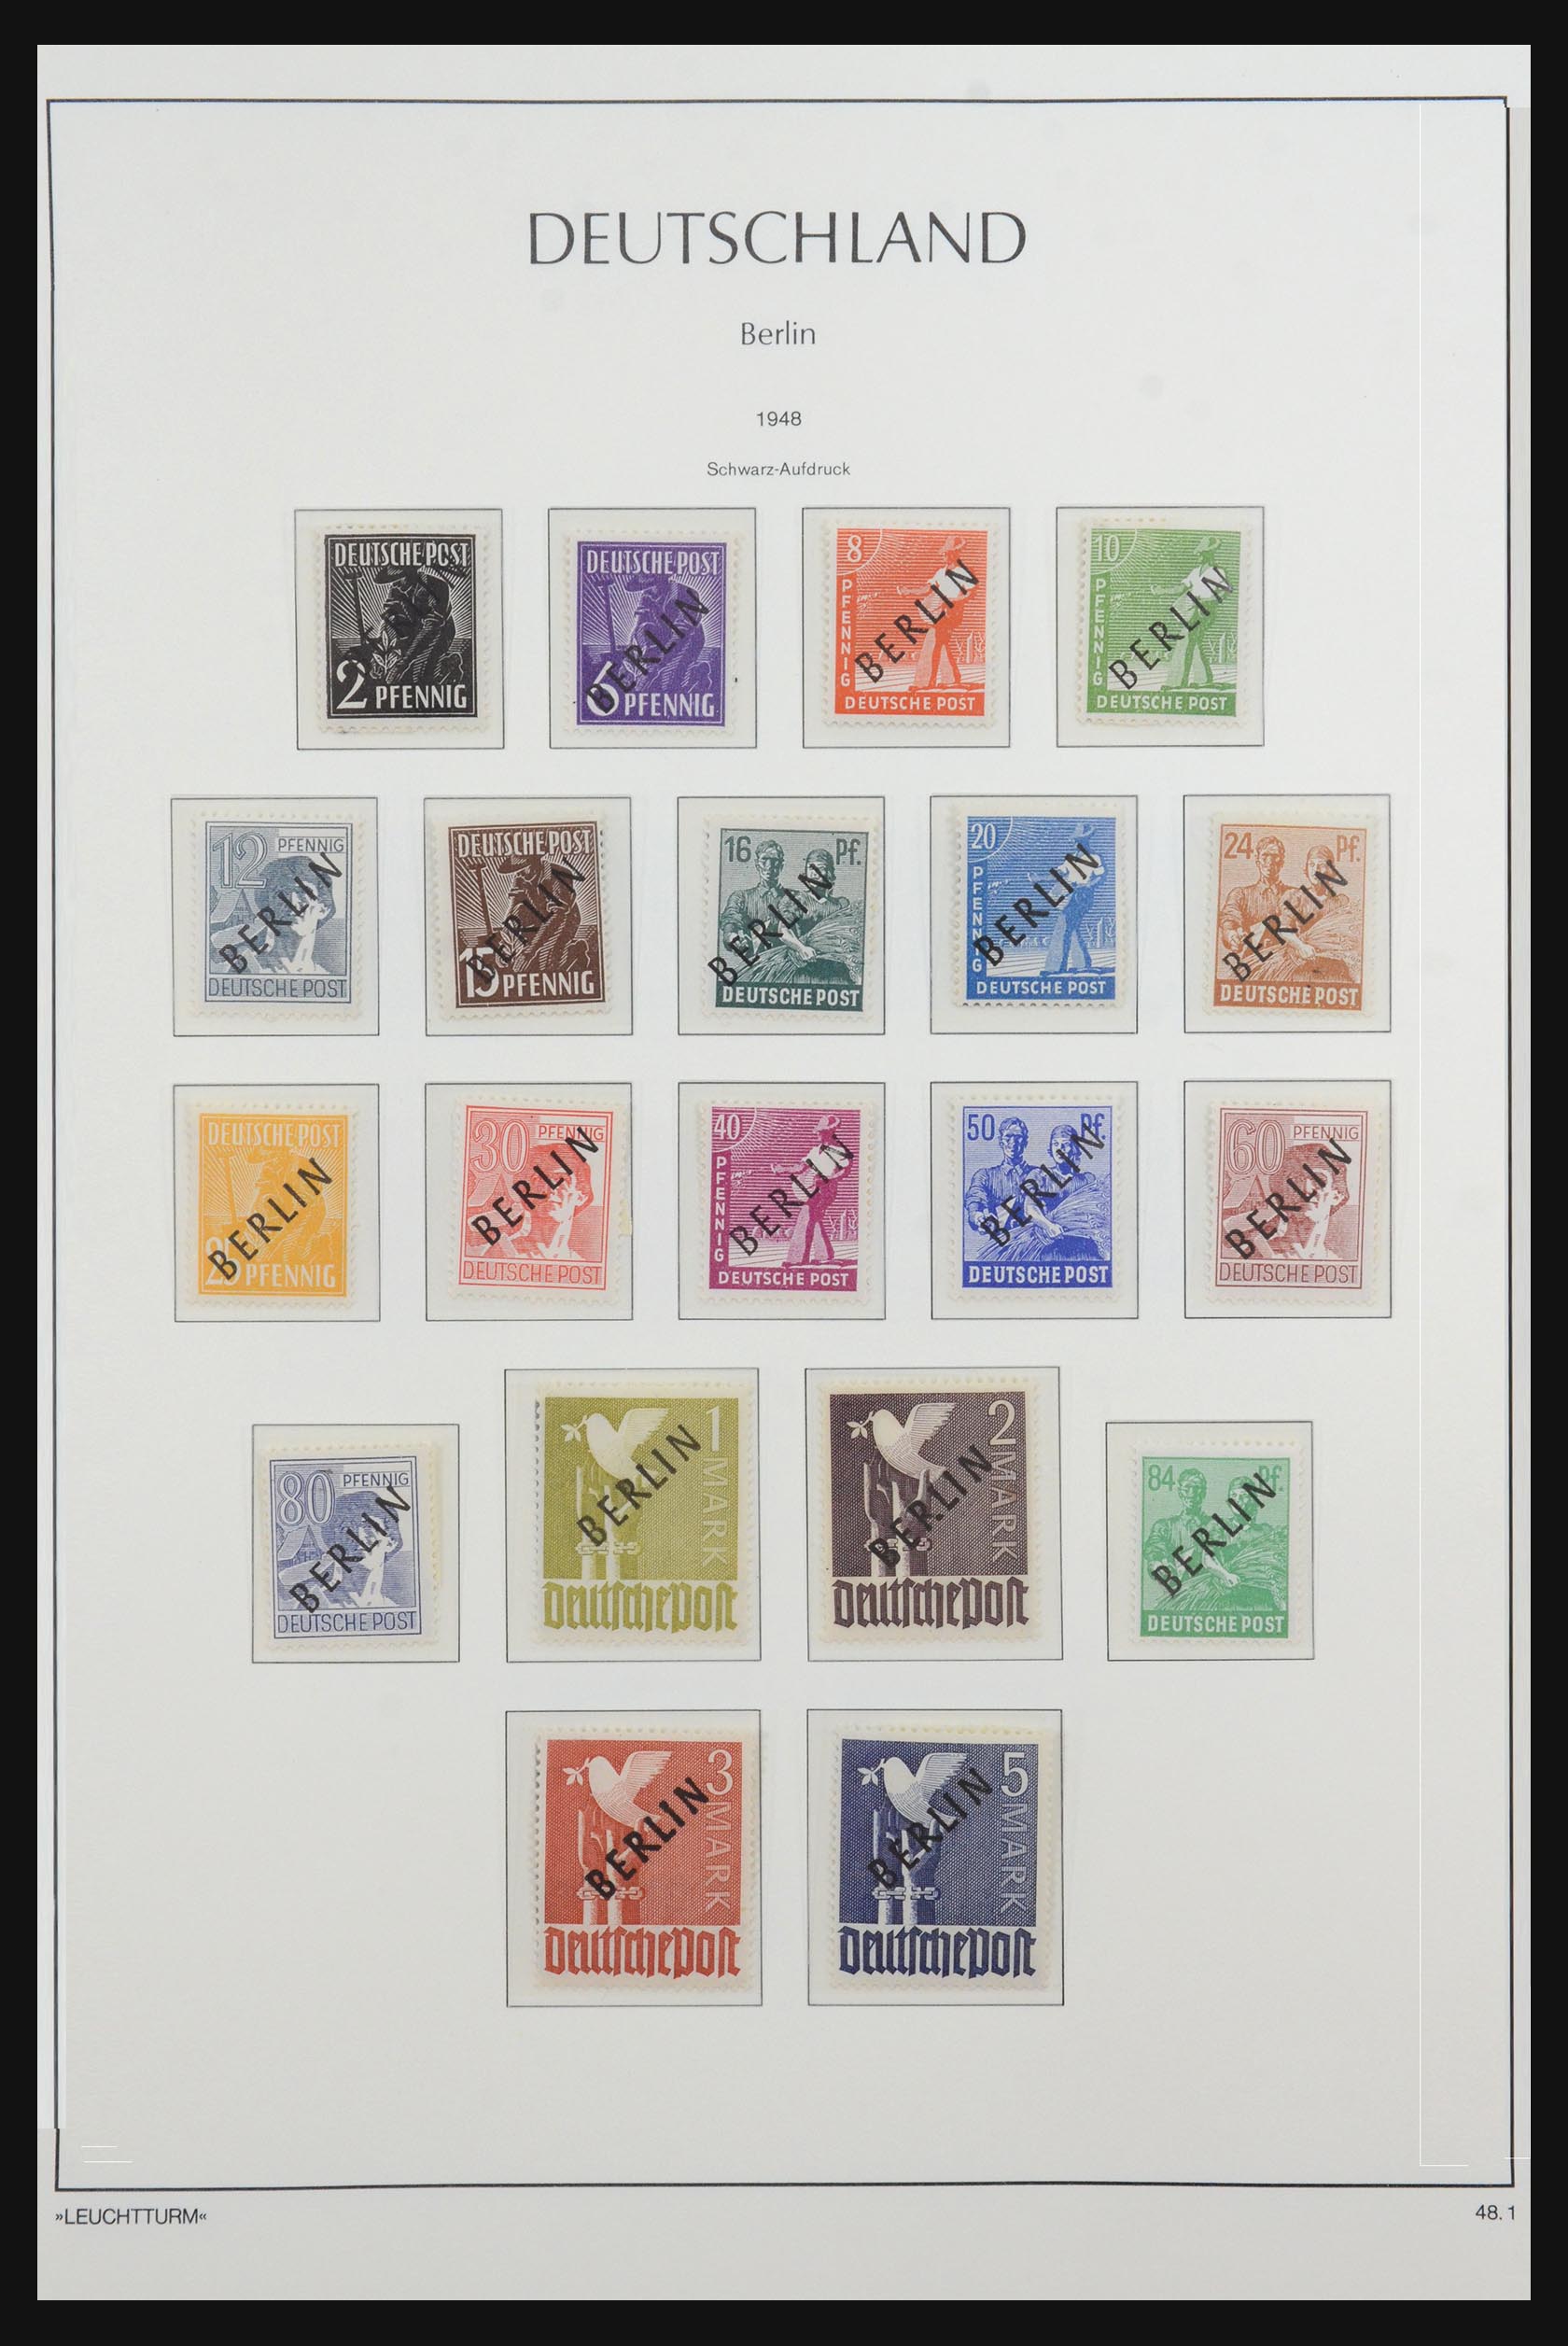 31601 001 - 31601 Bundespost, Berlijn en Saar 1948-2008.